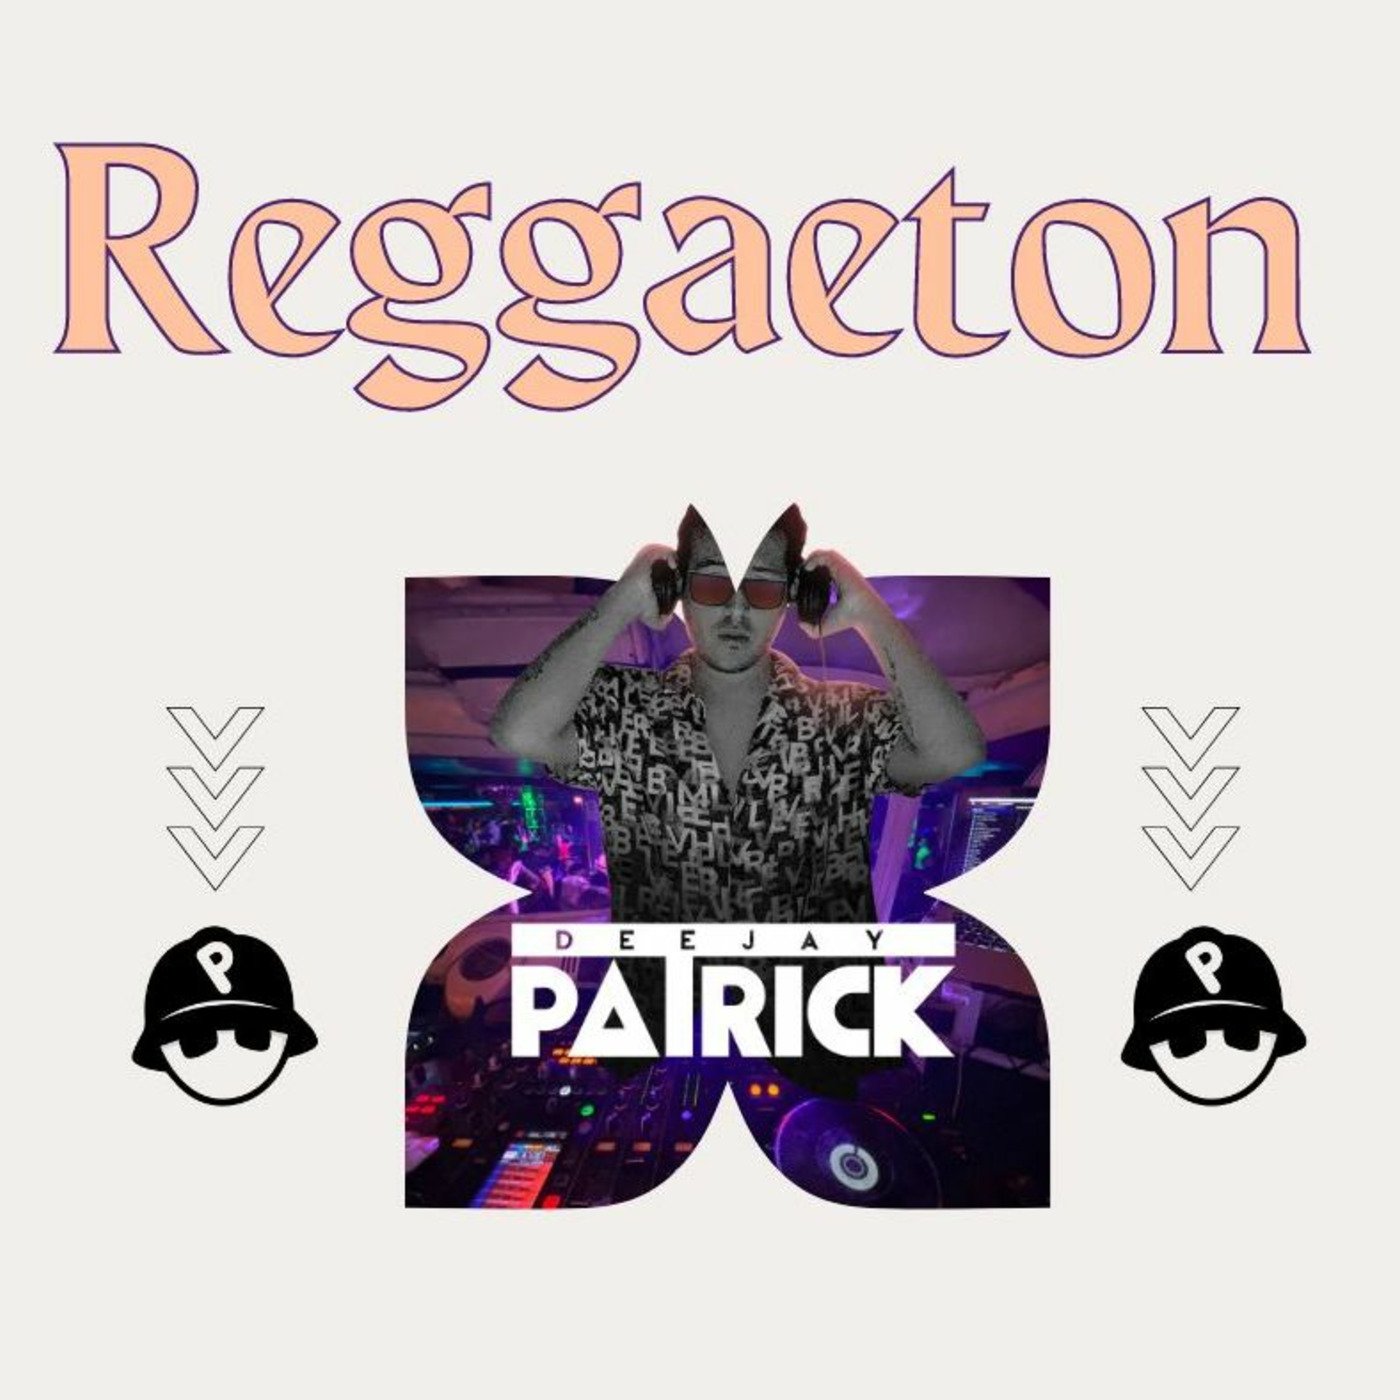 Reggaeton - Dj Patrick